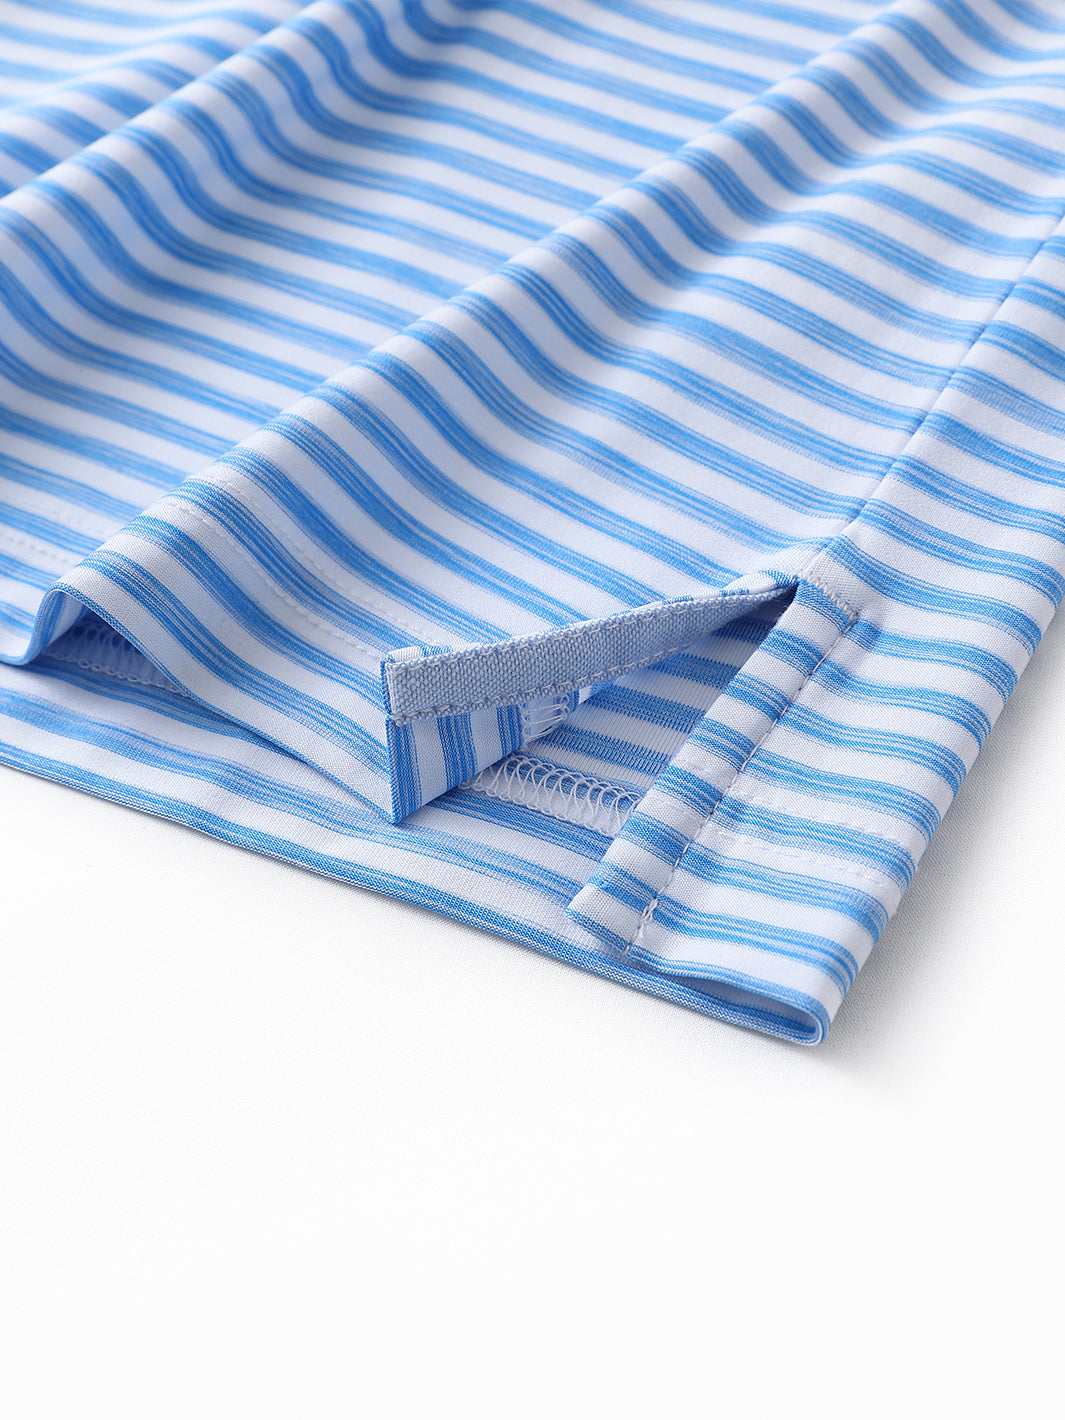 Men's Striped Golf Polo Shirts-Powder Blue White